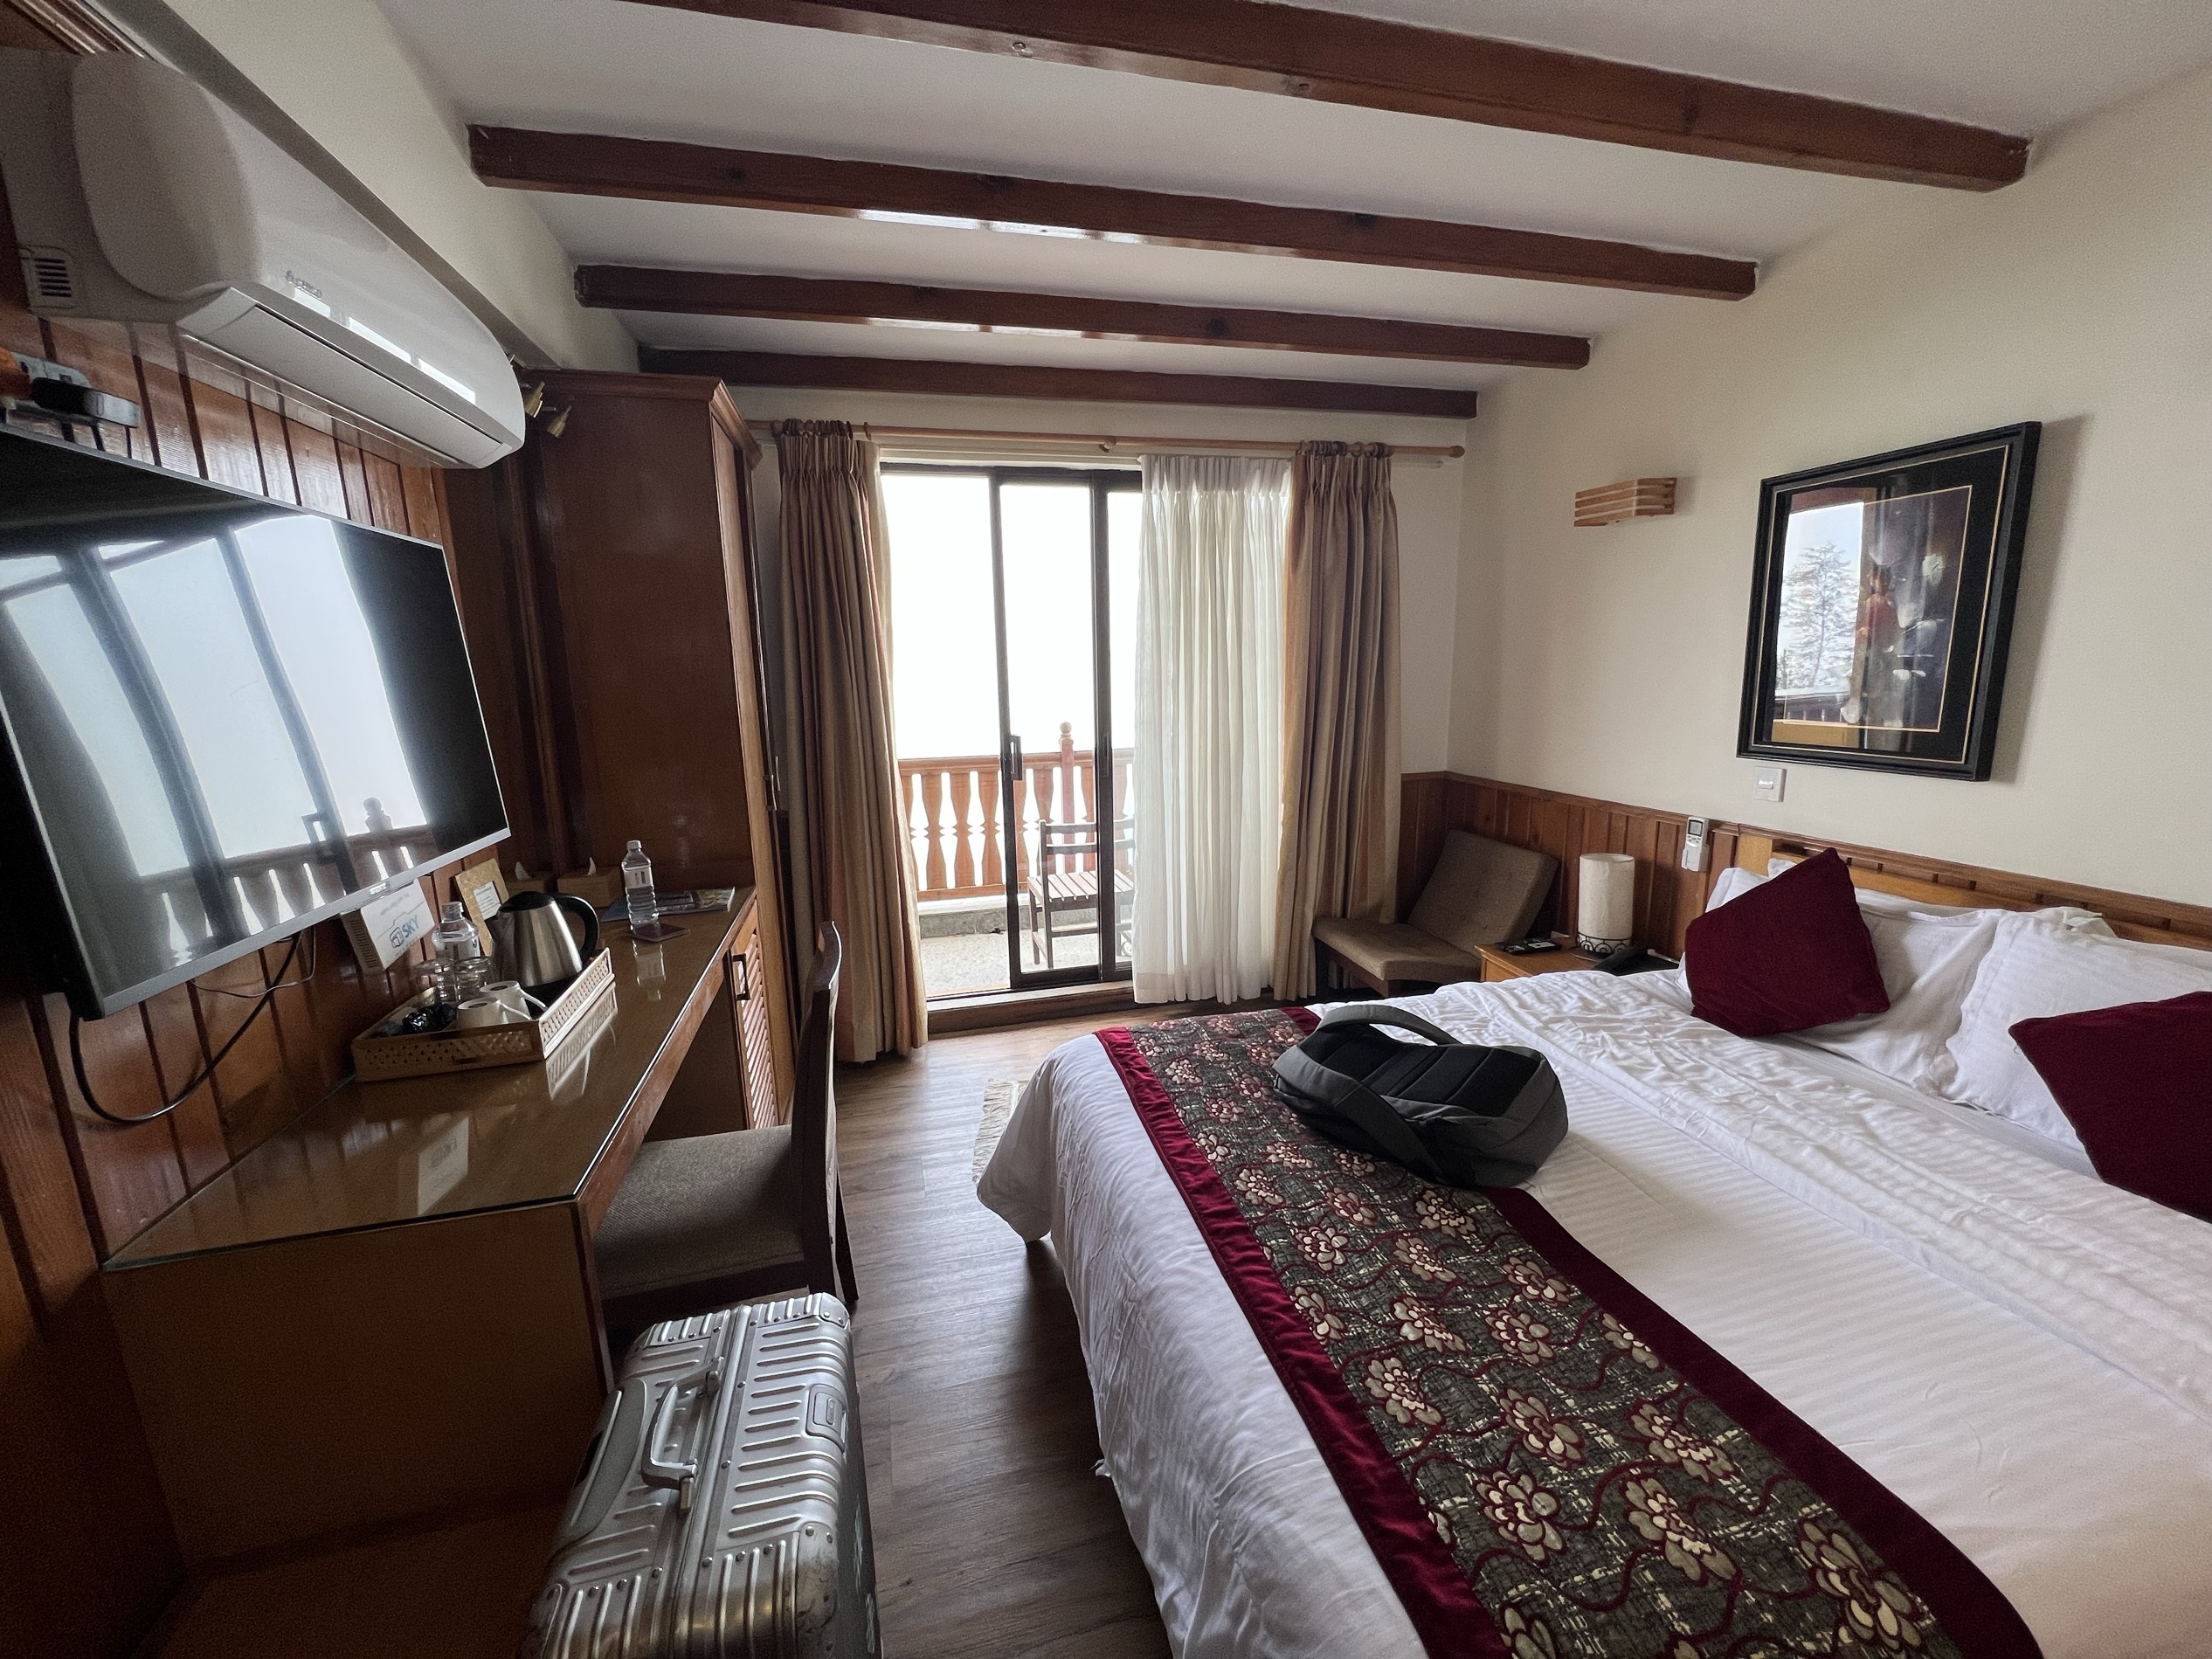 除了房间小点房间旧点，其他挺好的。真不知道尼泊尔这边酒店怎么评的星，室内那些4星真不如这个3星。服务